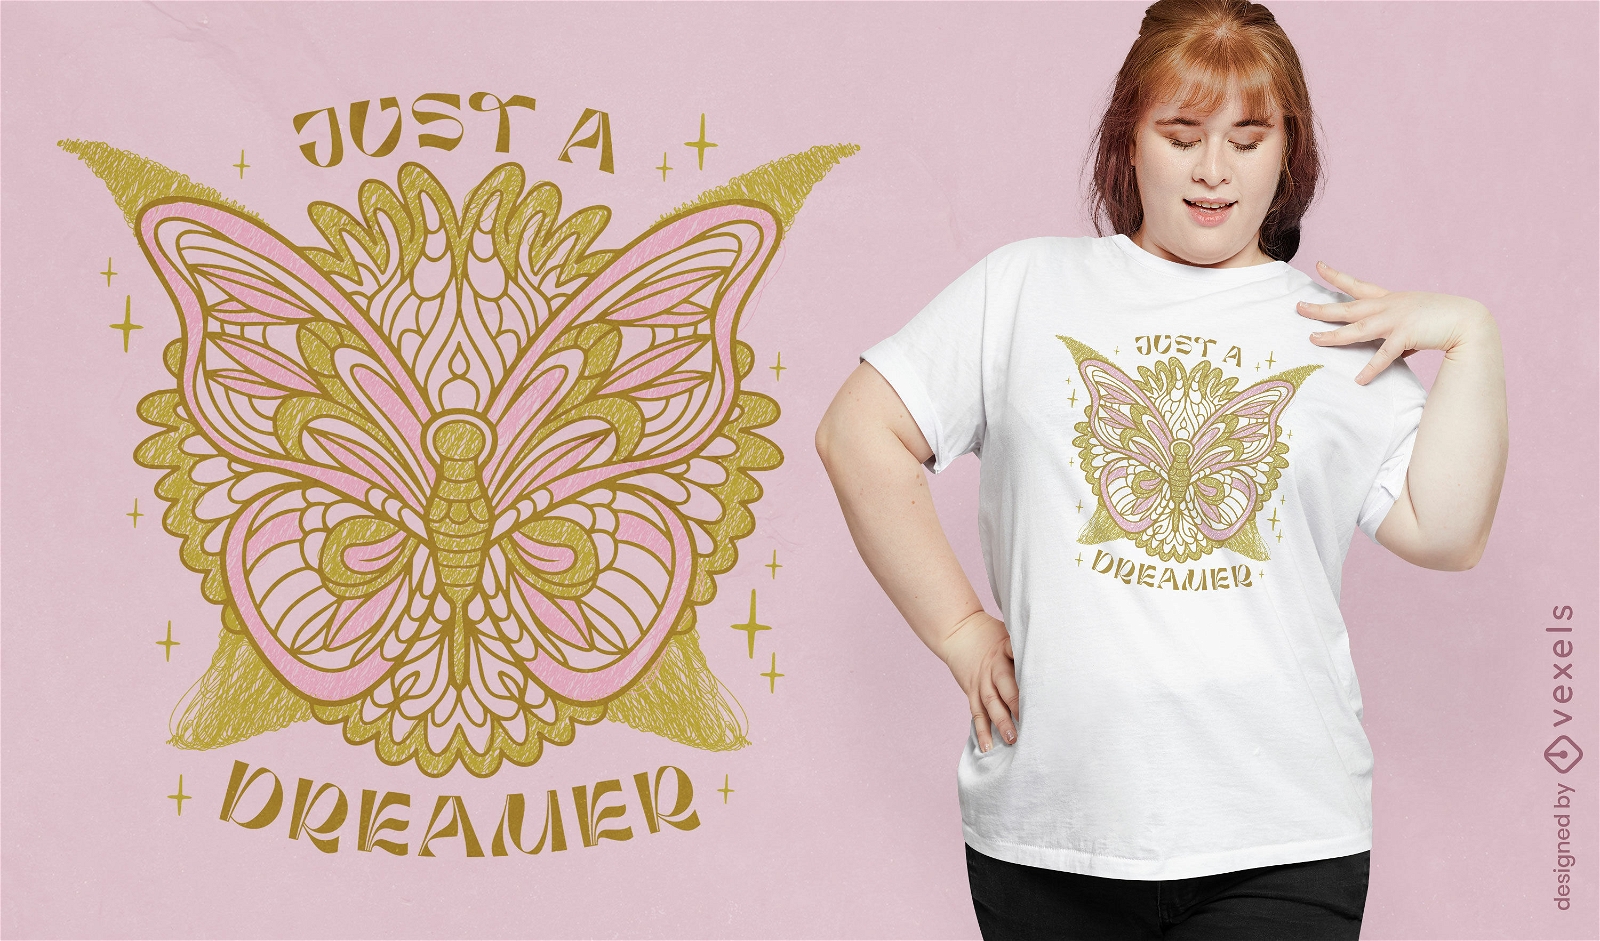 Mandala butterfly t-shirt design